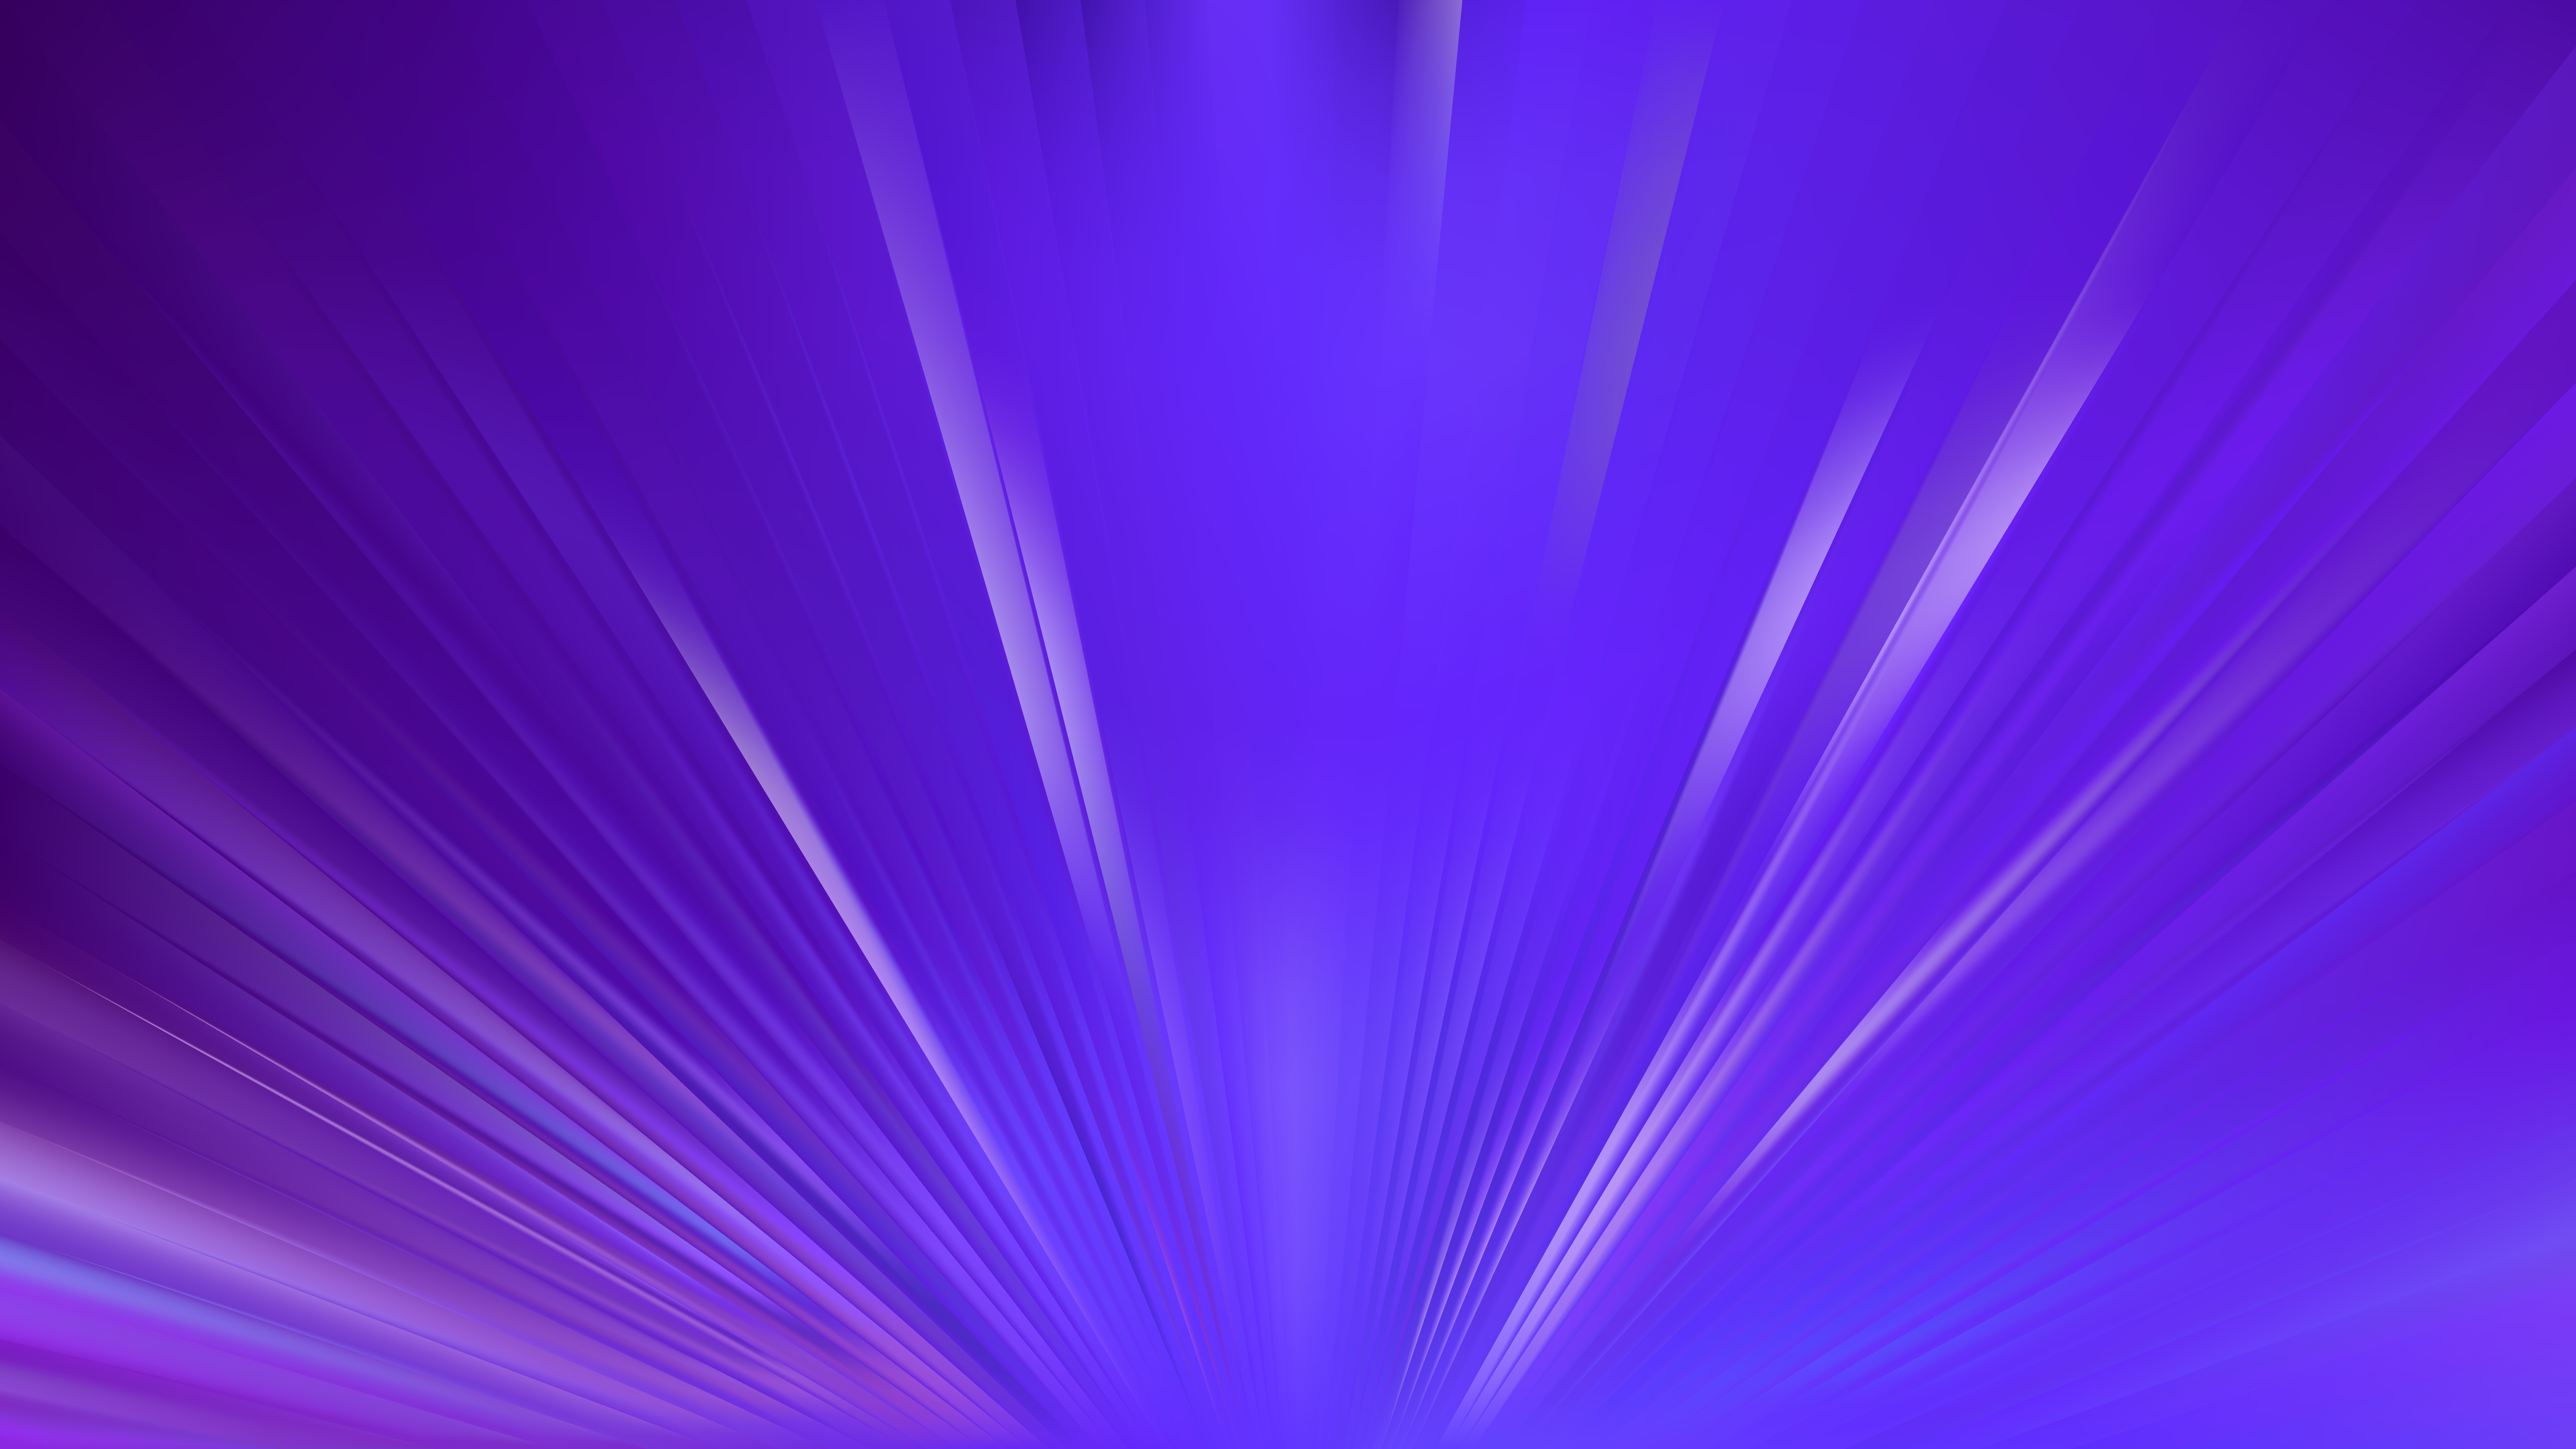 Chuẩn bị cho một trải nghiệm tuyệt vời với nền tảng Vector miễn phí Blue và Purple Rays Background. Với sự kết hợp hài hòa giữa hai tông màu xanh và tím, bạn sẽ được thấy những tia nắng rực rỡ và năng động trên nền tím tươi sáng. Đây là một thứ bạn không thể bỏ qua!